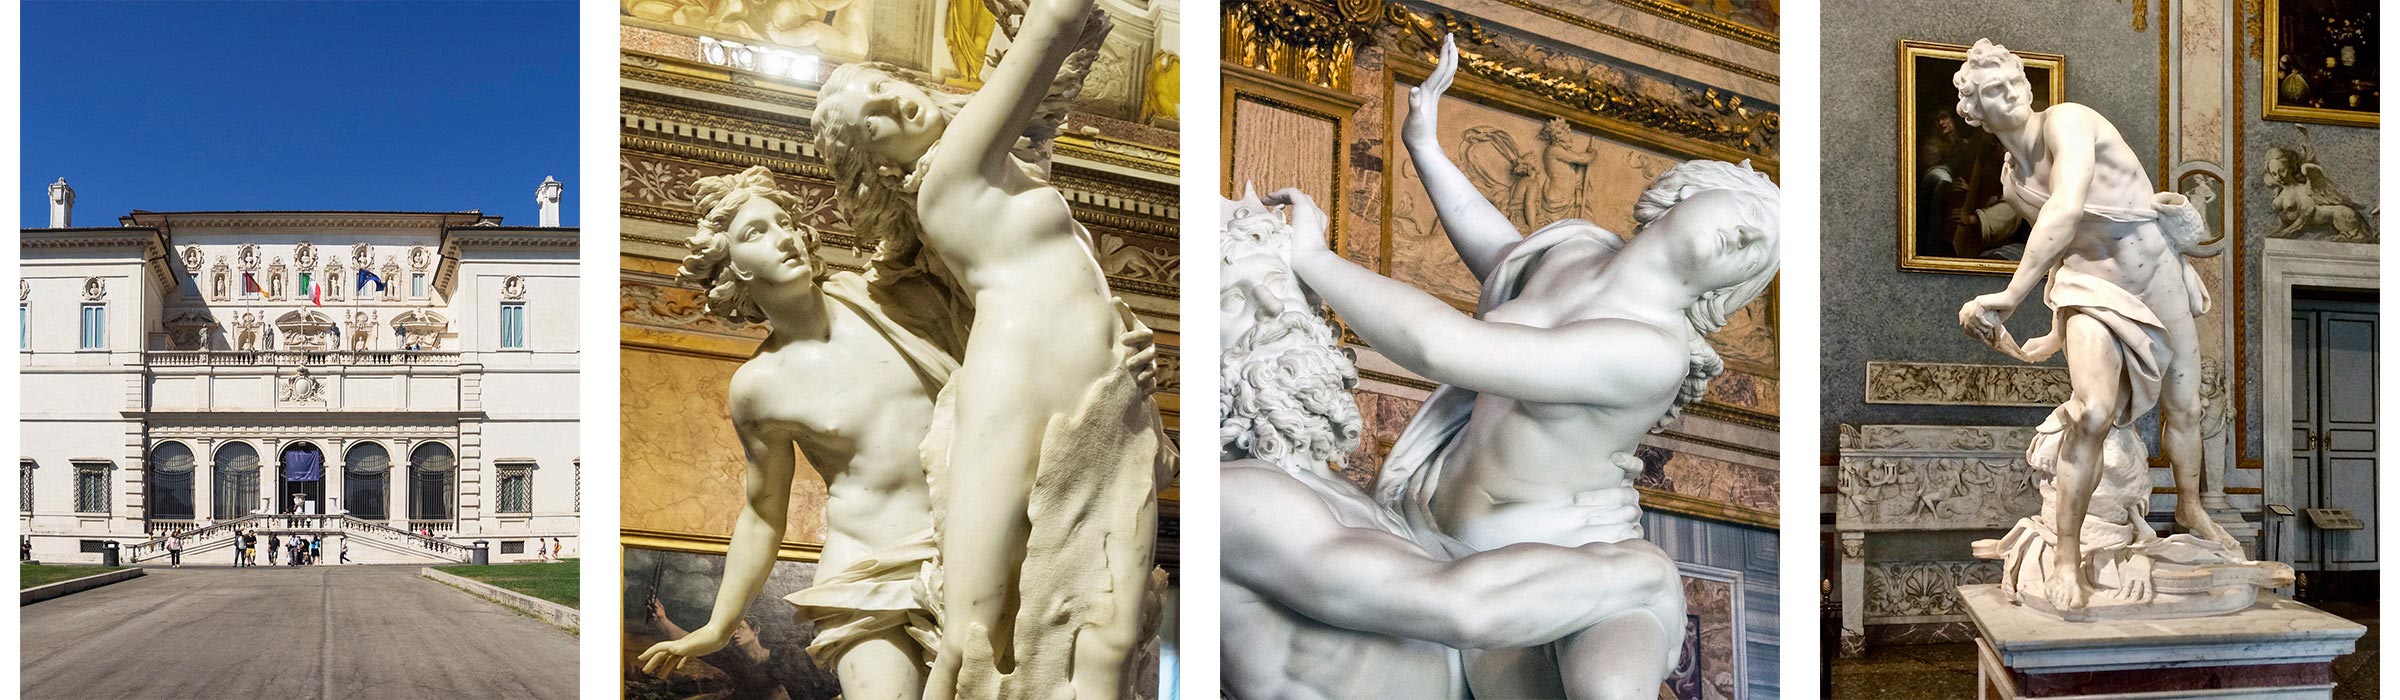 Galleria Borghese | Dafne e Apollo | Ratto di Proserpina | David